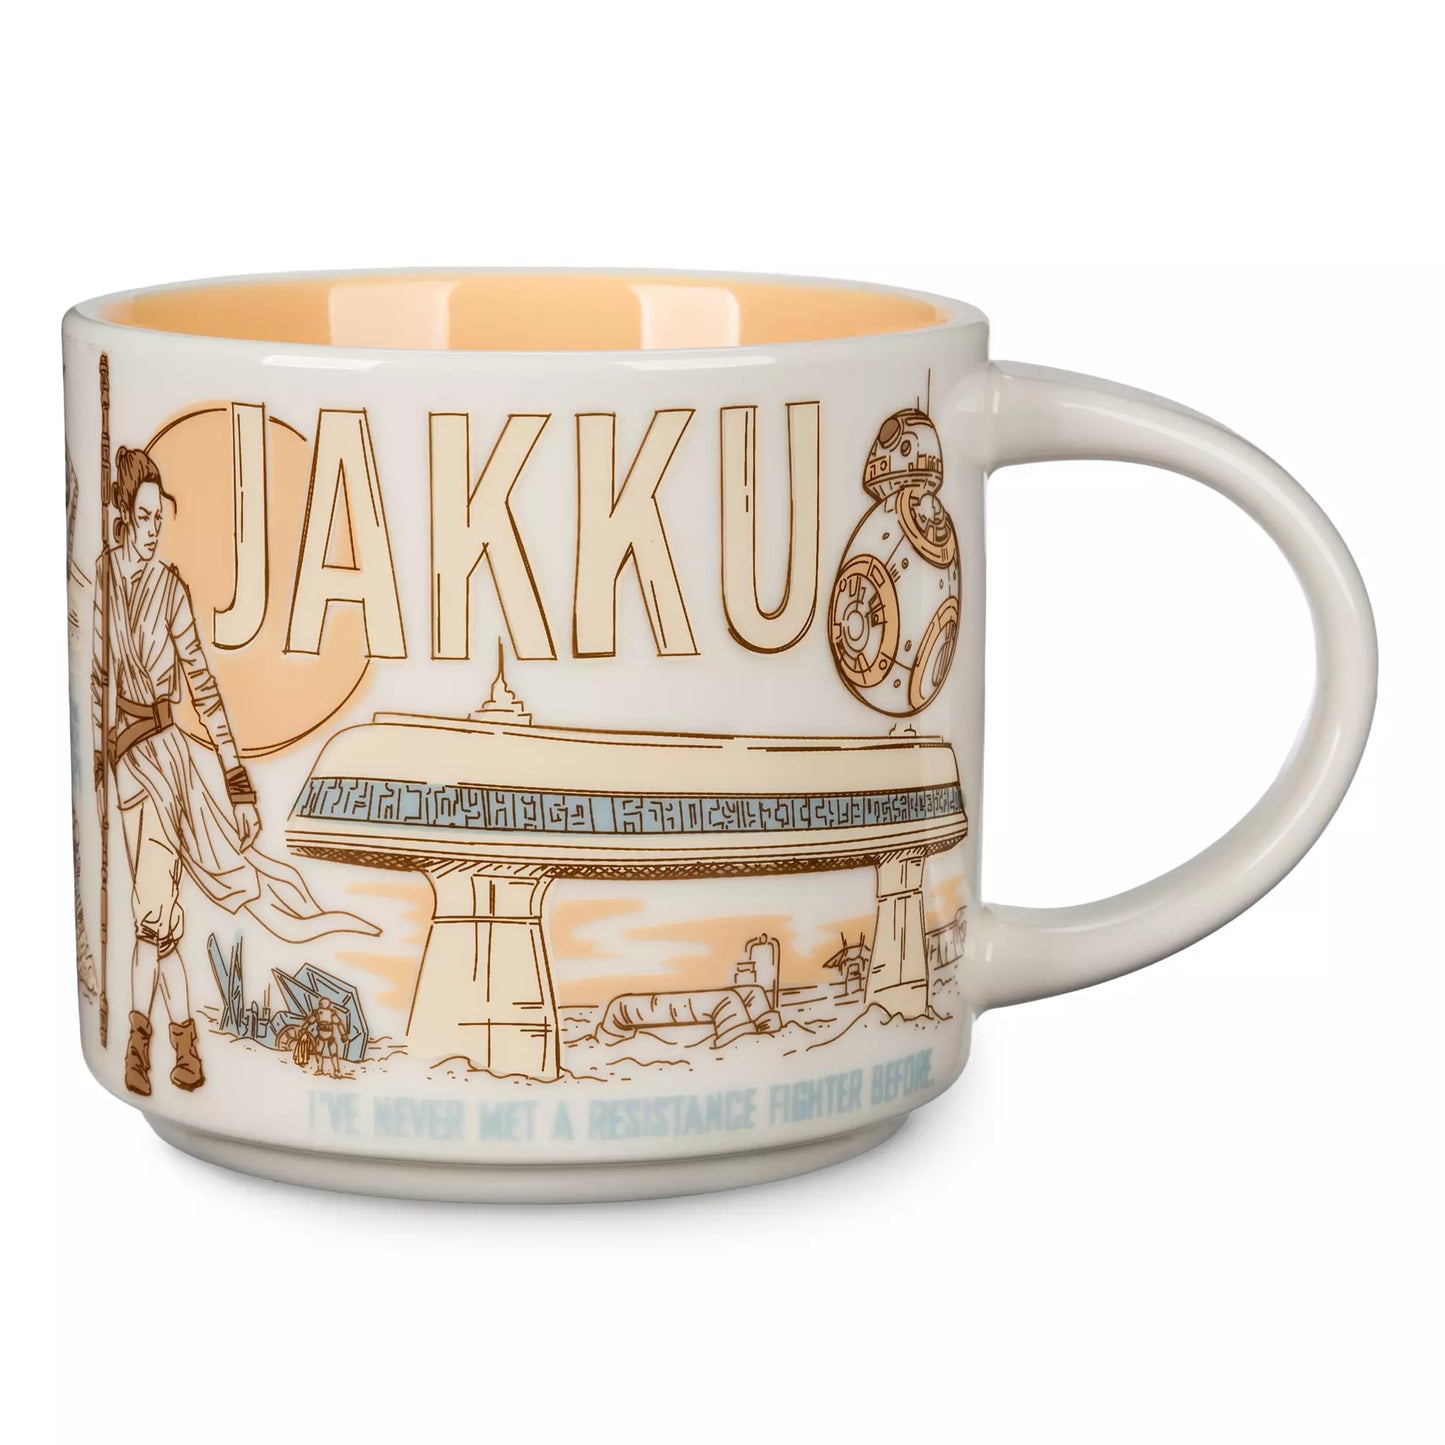 Jakku Starbucks Been There Series Mug  – Star Wars